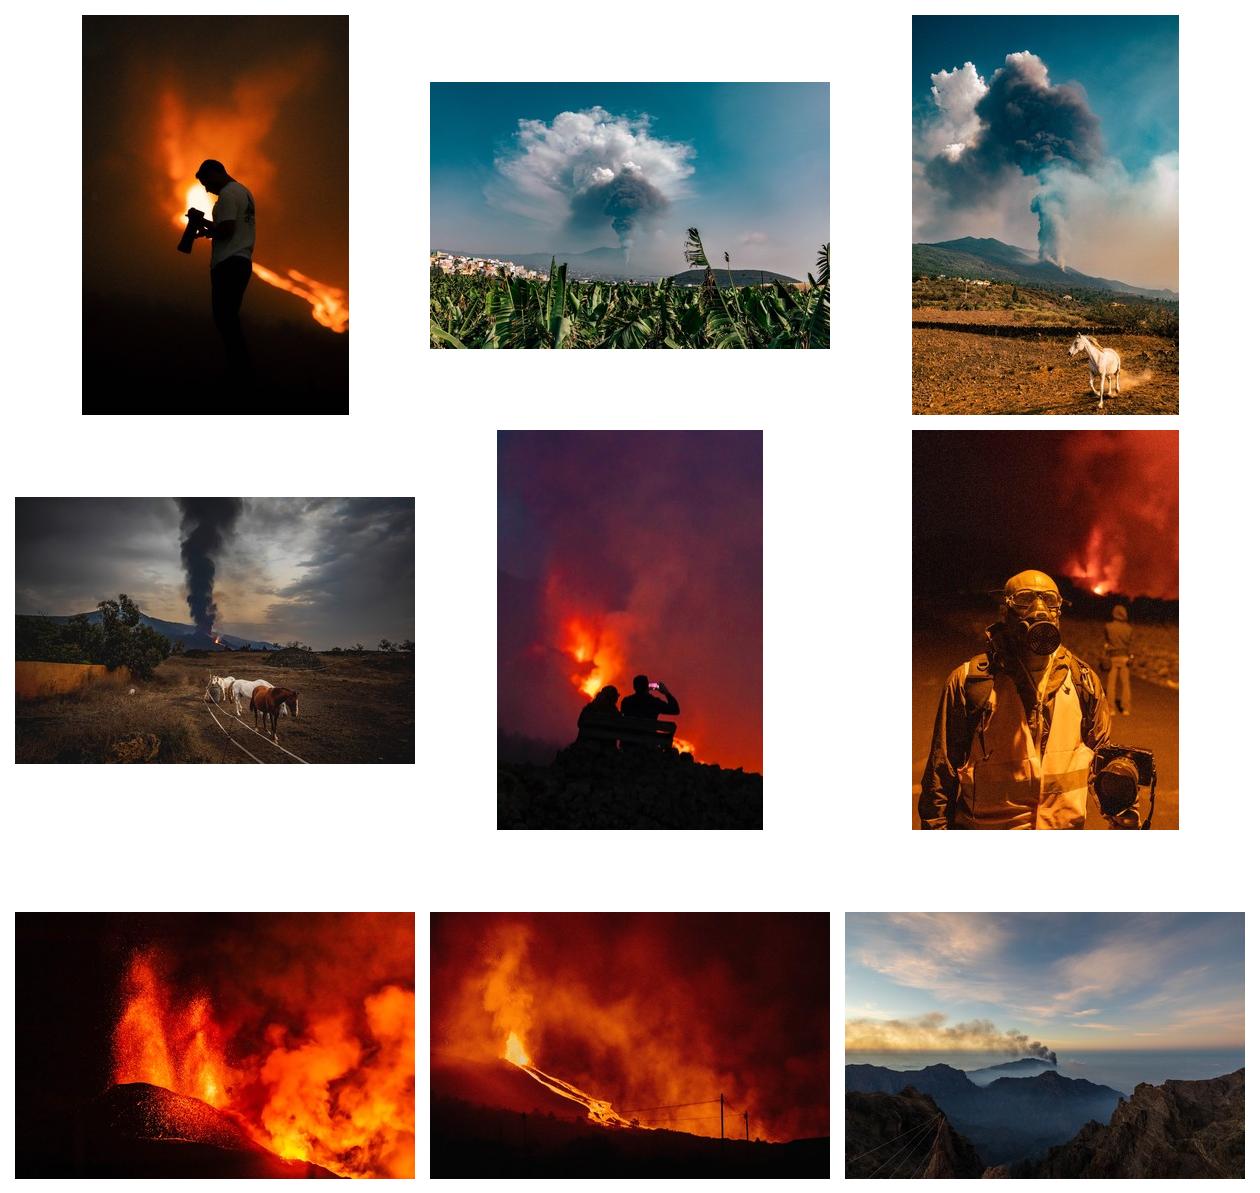 Volcano eruption - Blog-Beitrag von Fotograf José Bringas / 13.10.2021 14:31